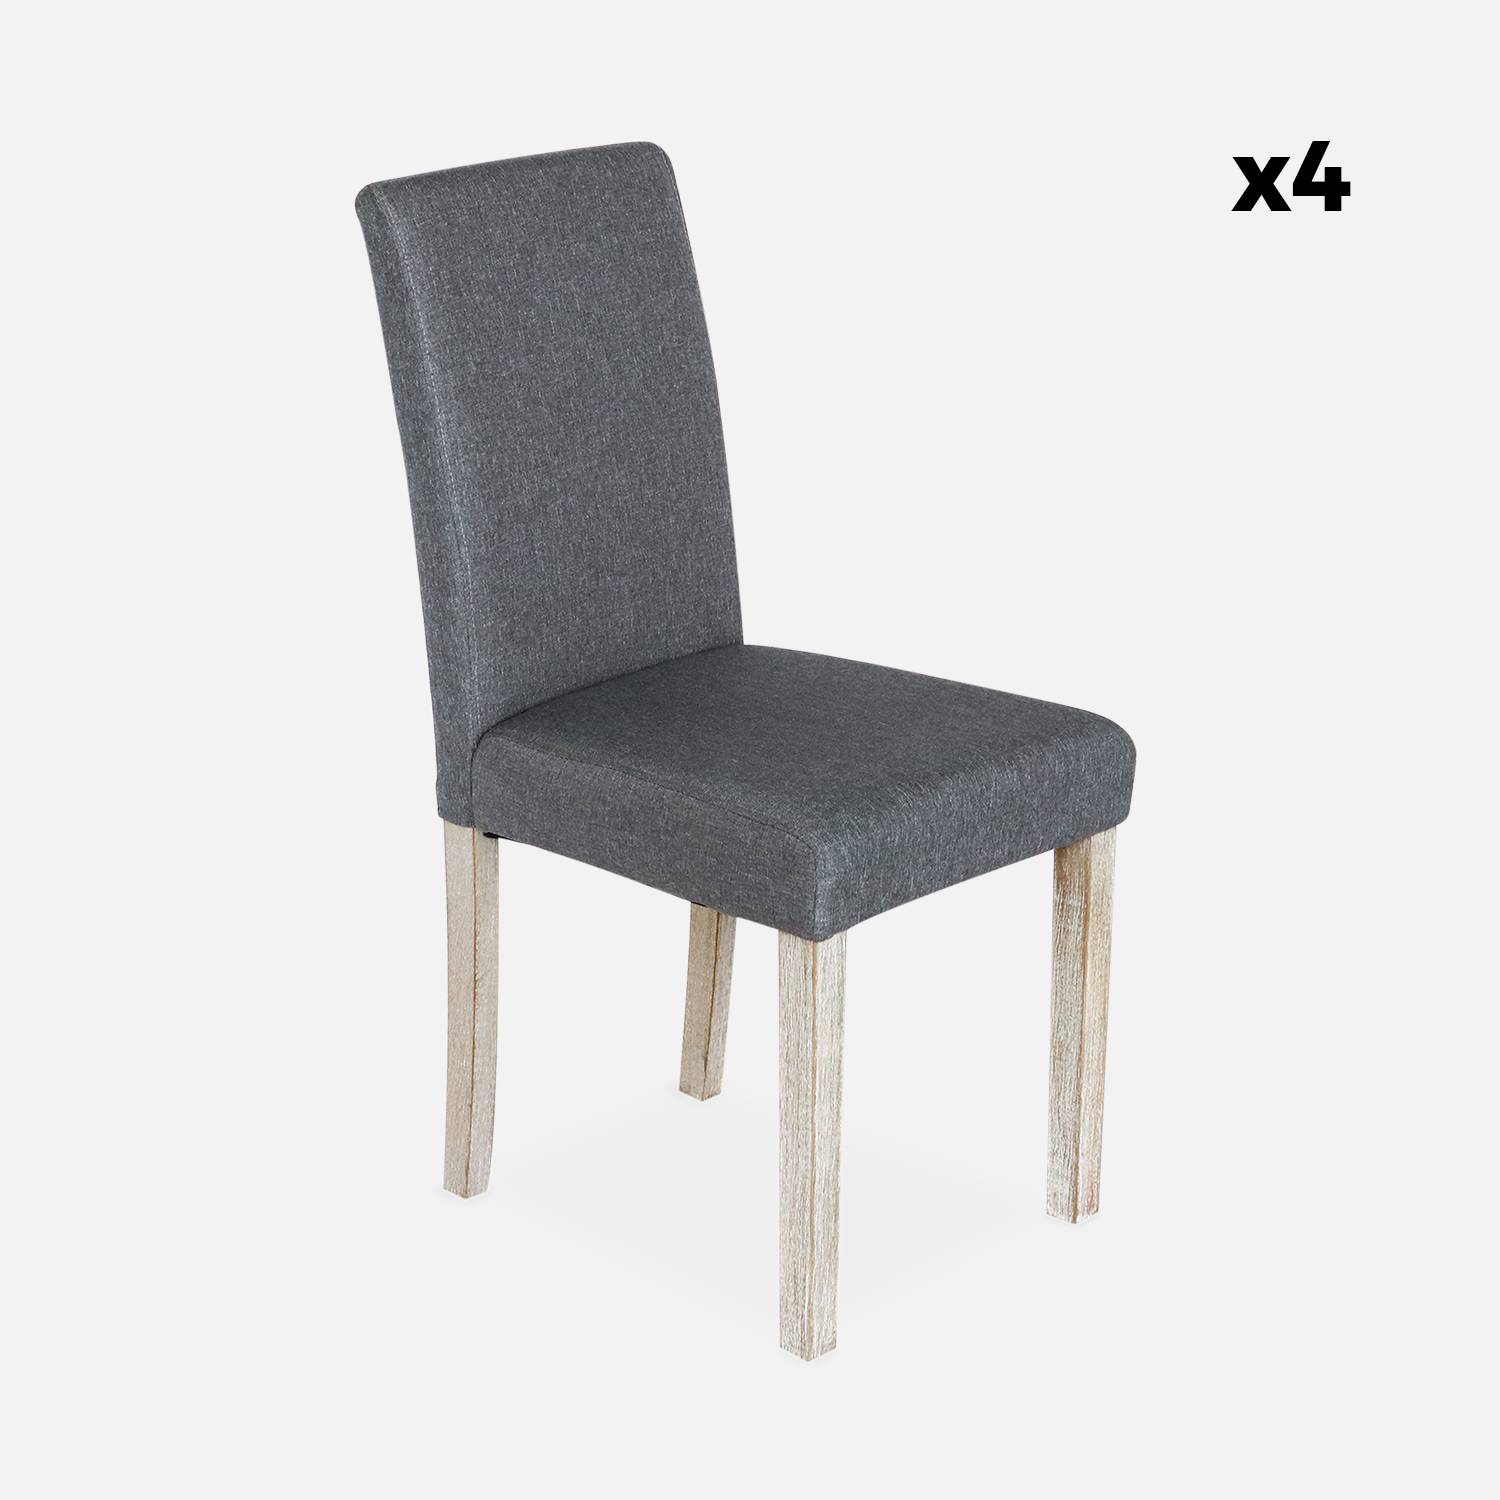 Lot de 4 chaises - Rita - chaises en tissu, pieds en bois cérusé, gris foncés Photo6